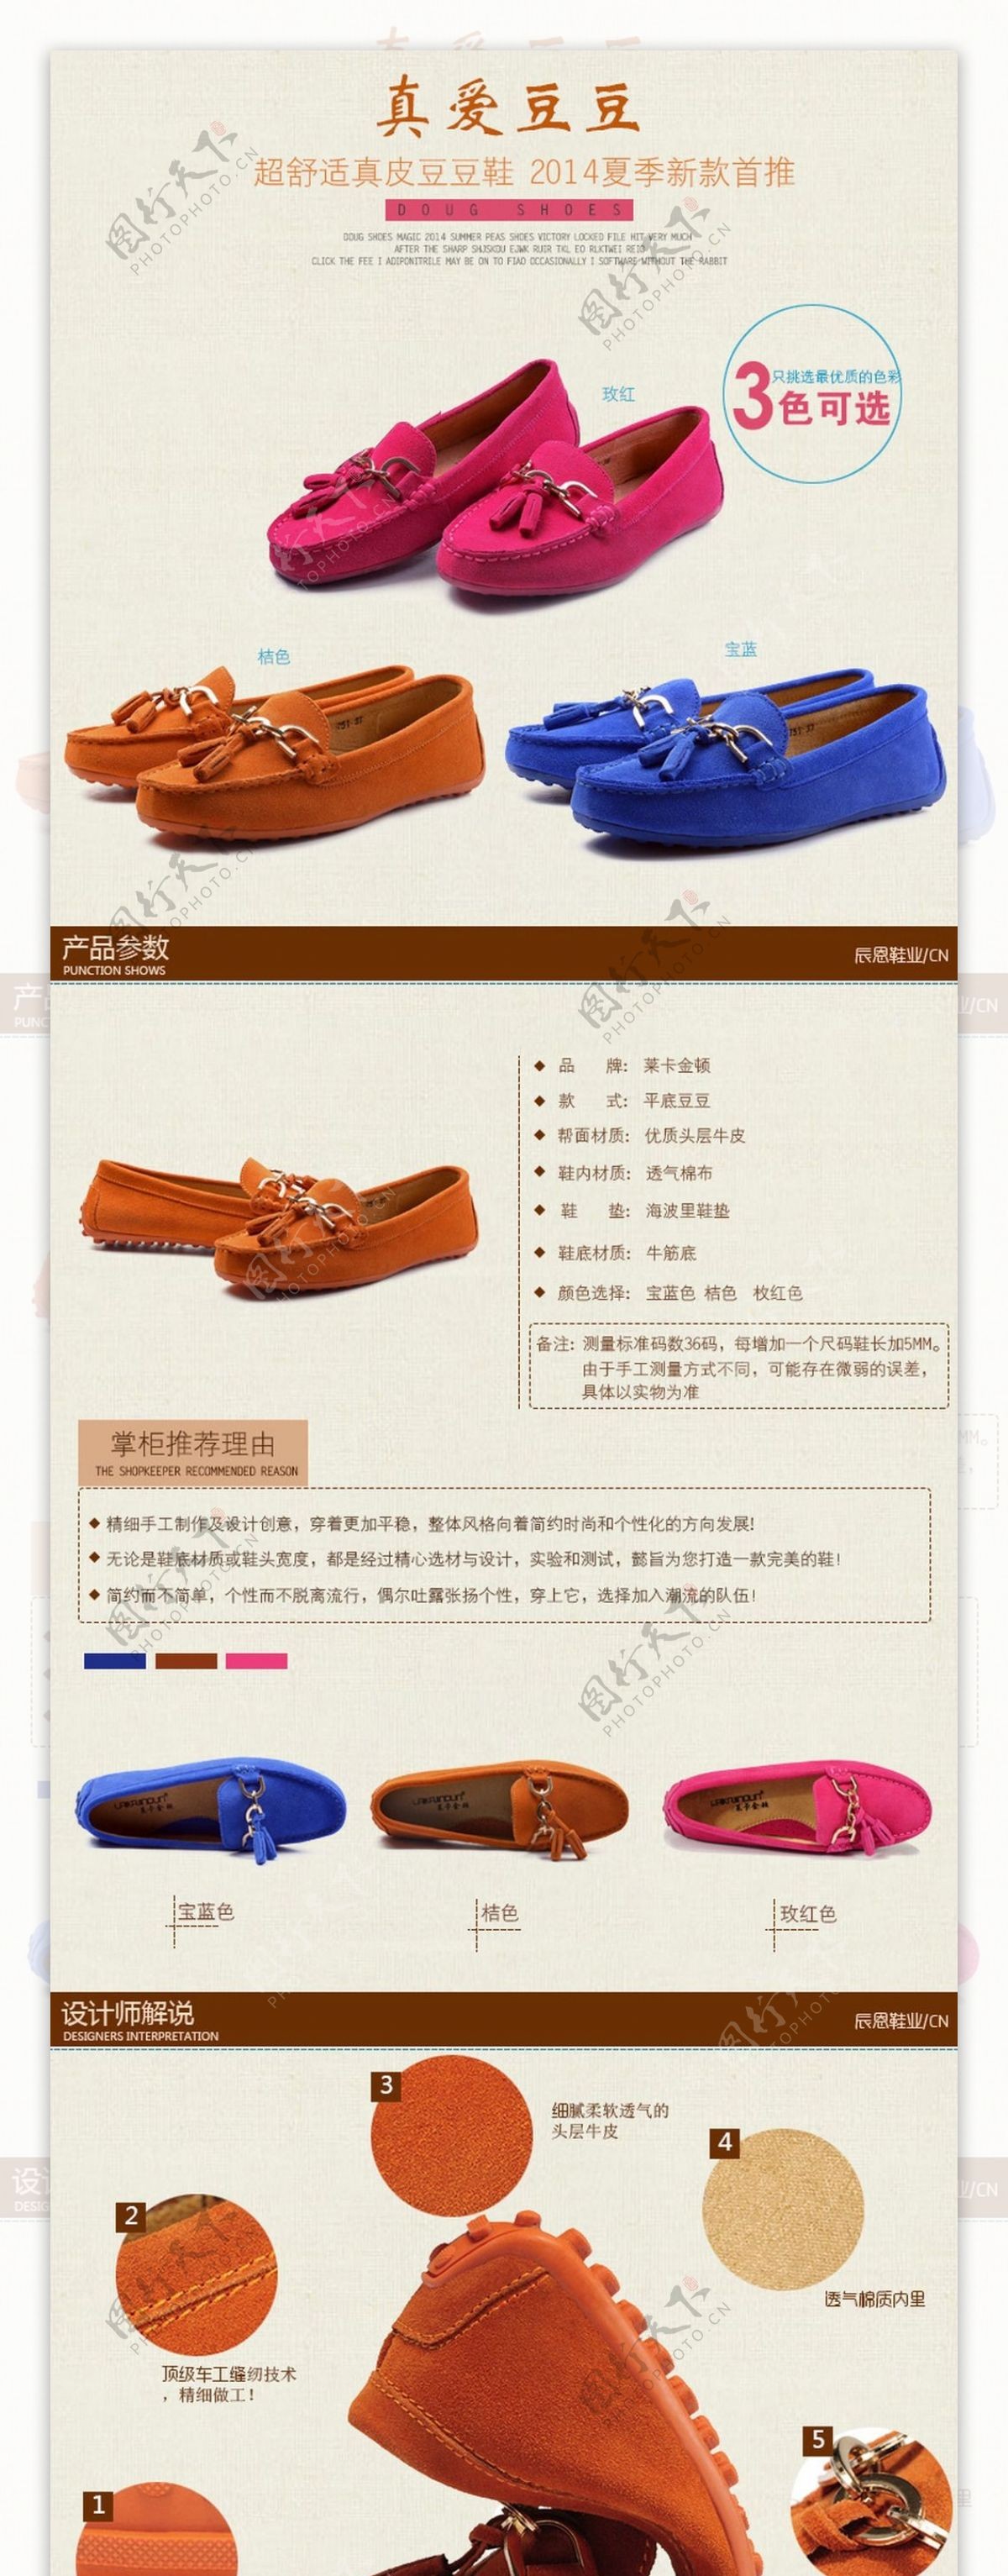 豆豆女鞋详情页描述页设计简约清新风格